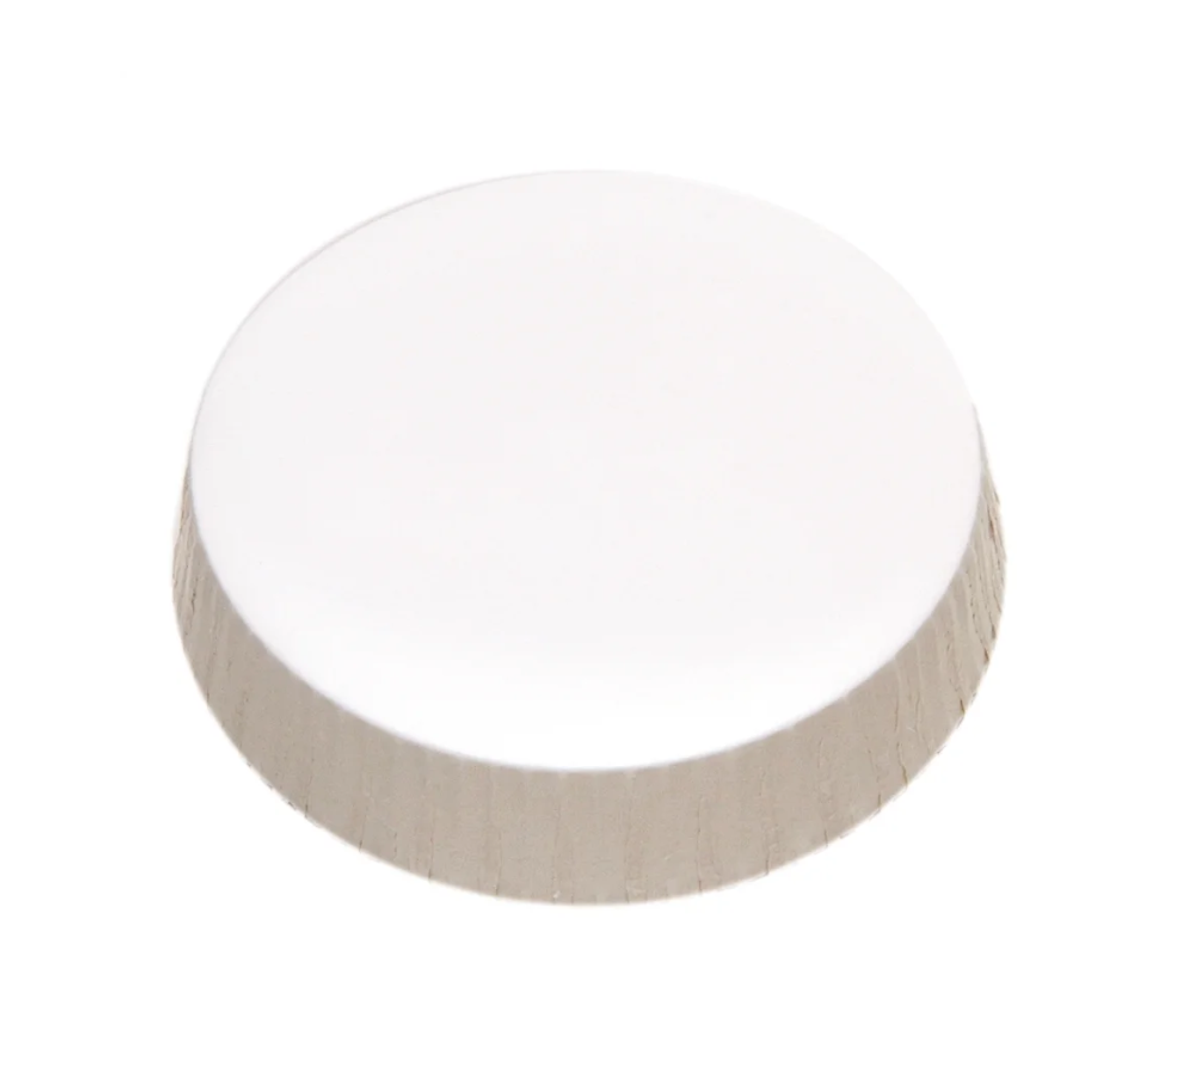 Sonoco Unprinted Stancaps Glass Cover, Paper, 72MM, 1000 Per Case